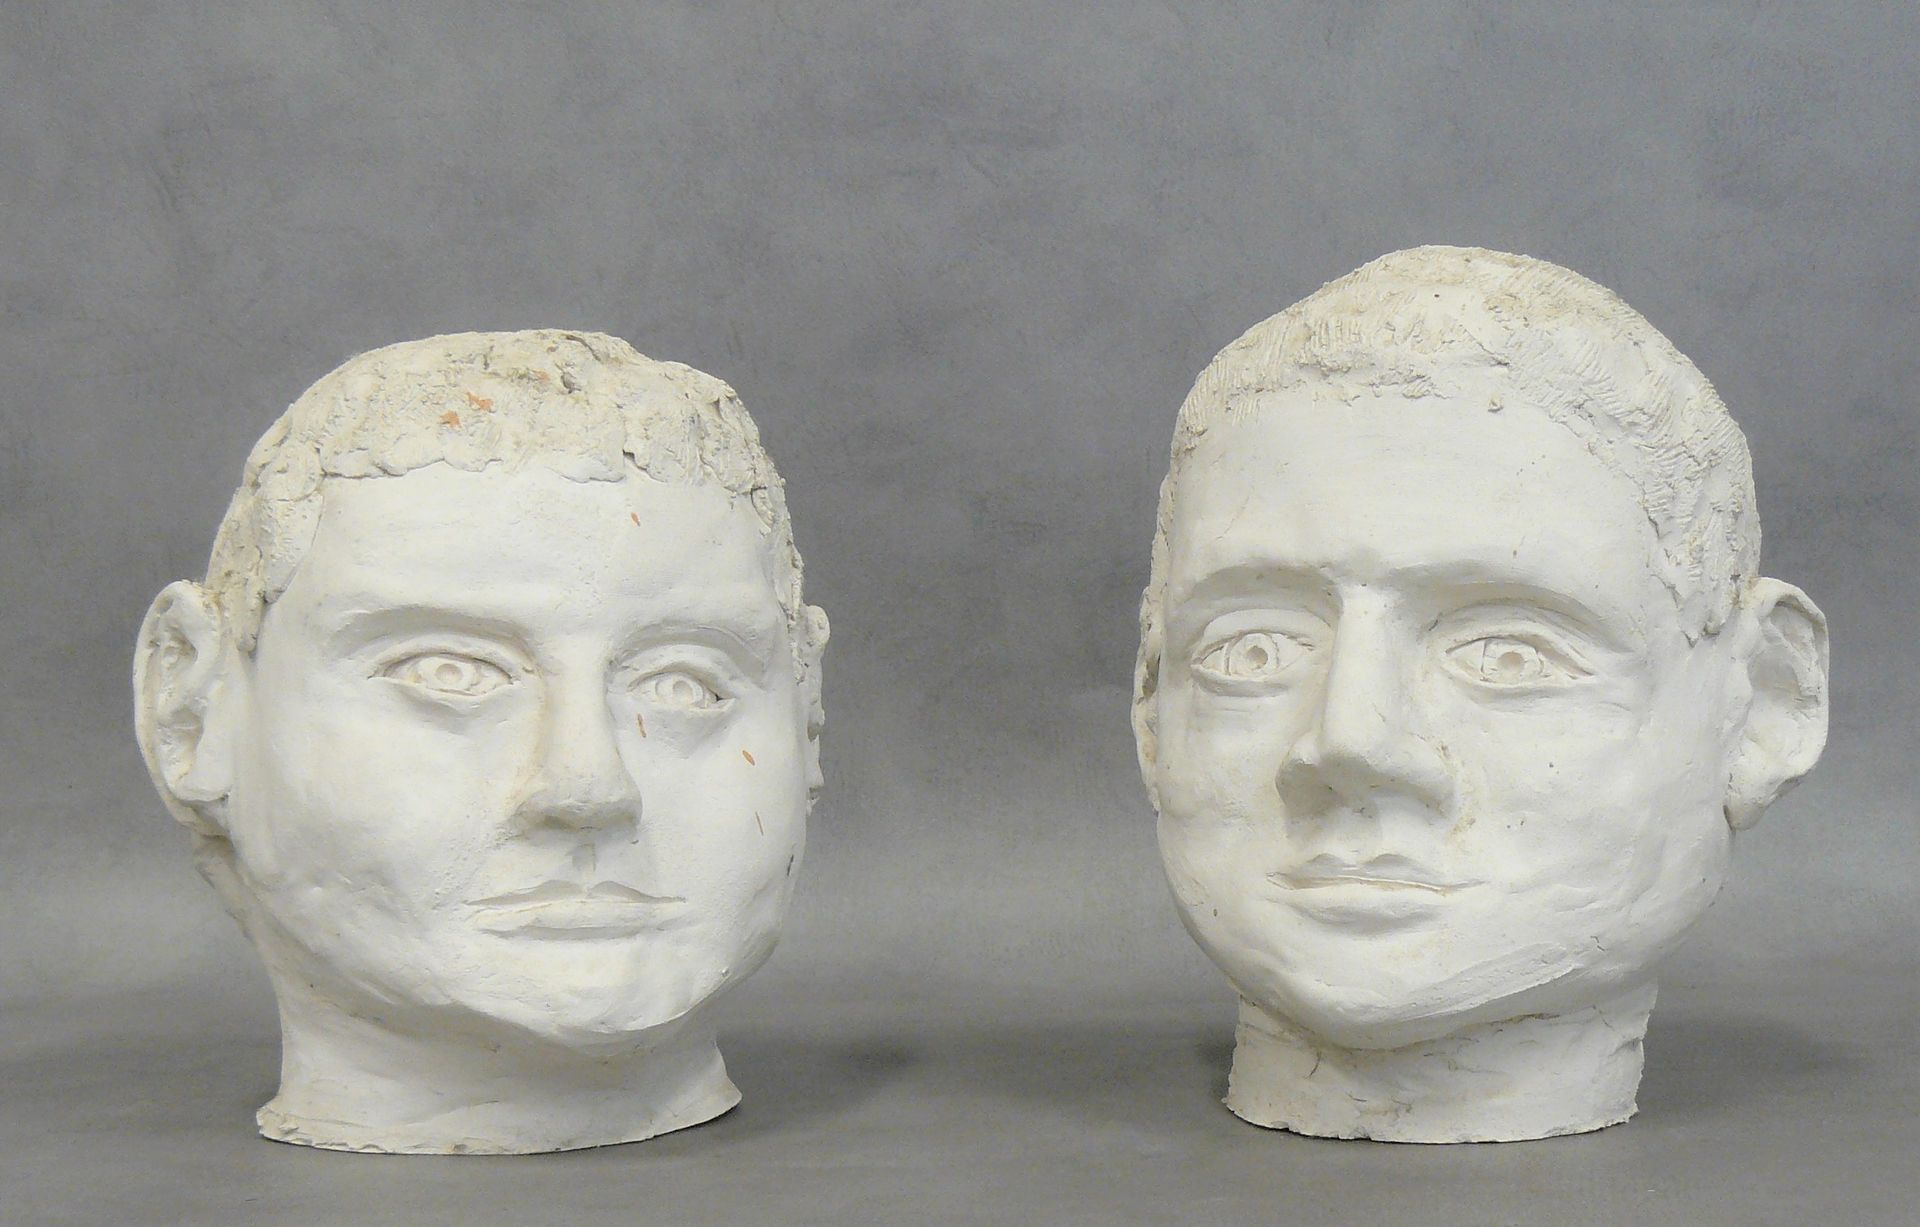 Null dos cabezas de terracota blanca - H 19 y H 20 cm